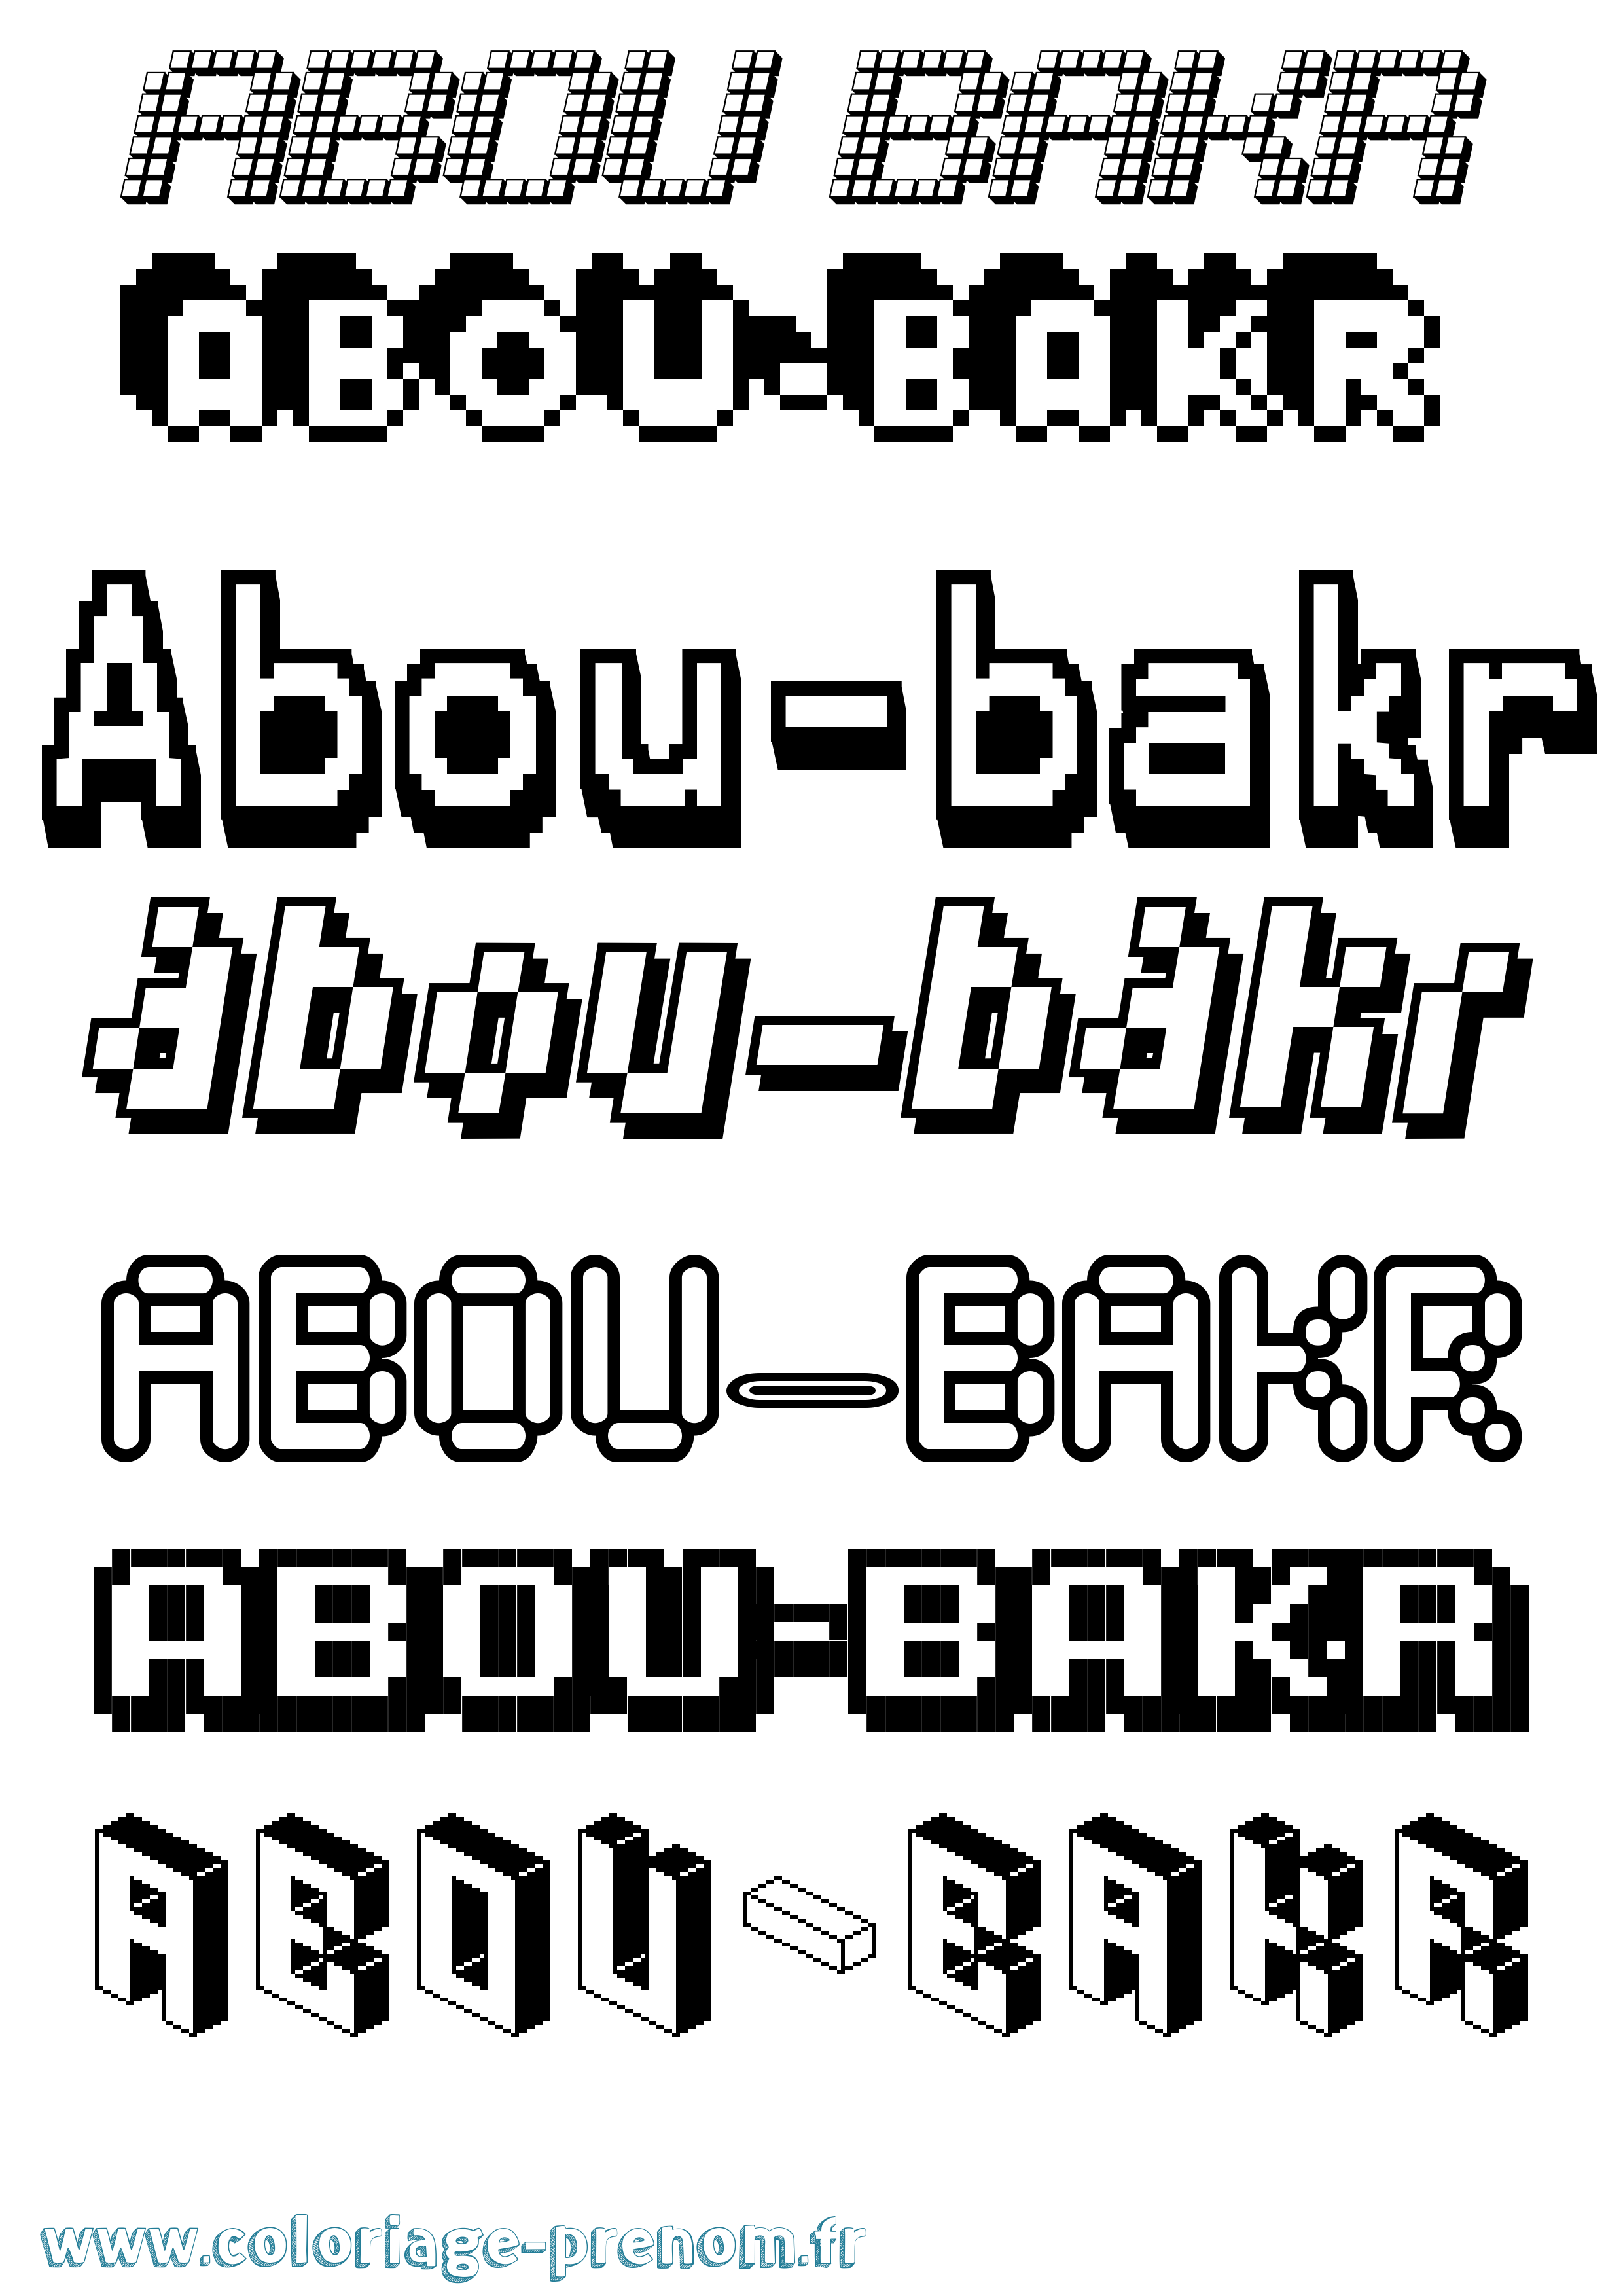 Coloriage prénom Abou-Bakr Pixel